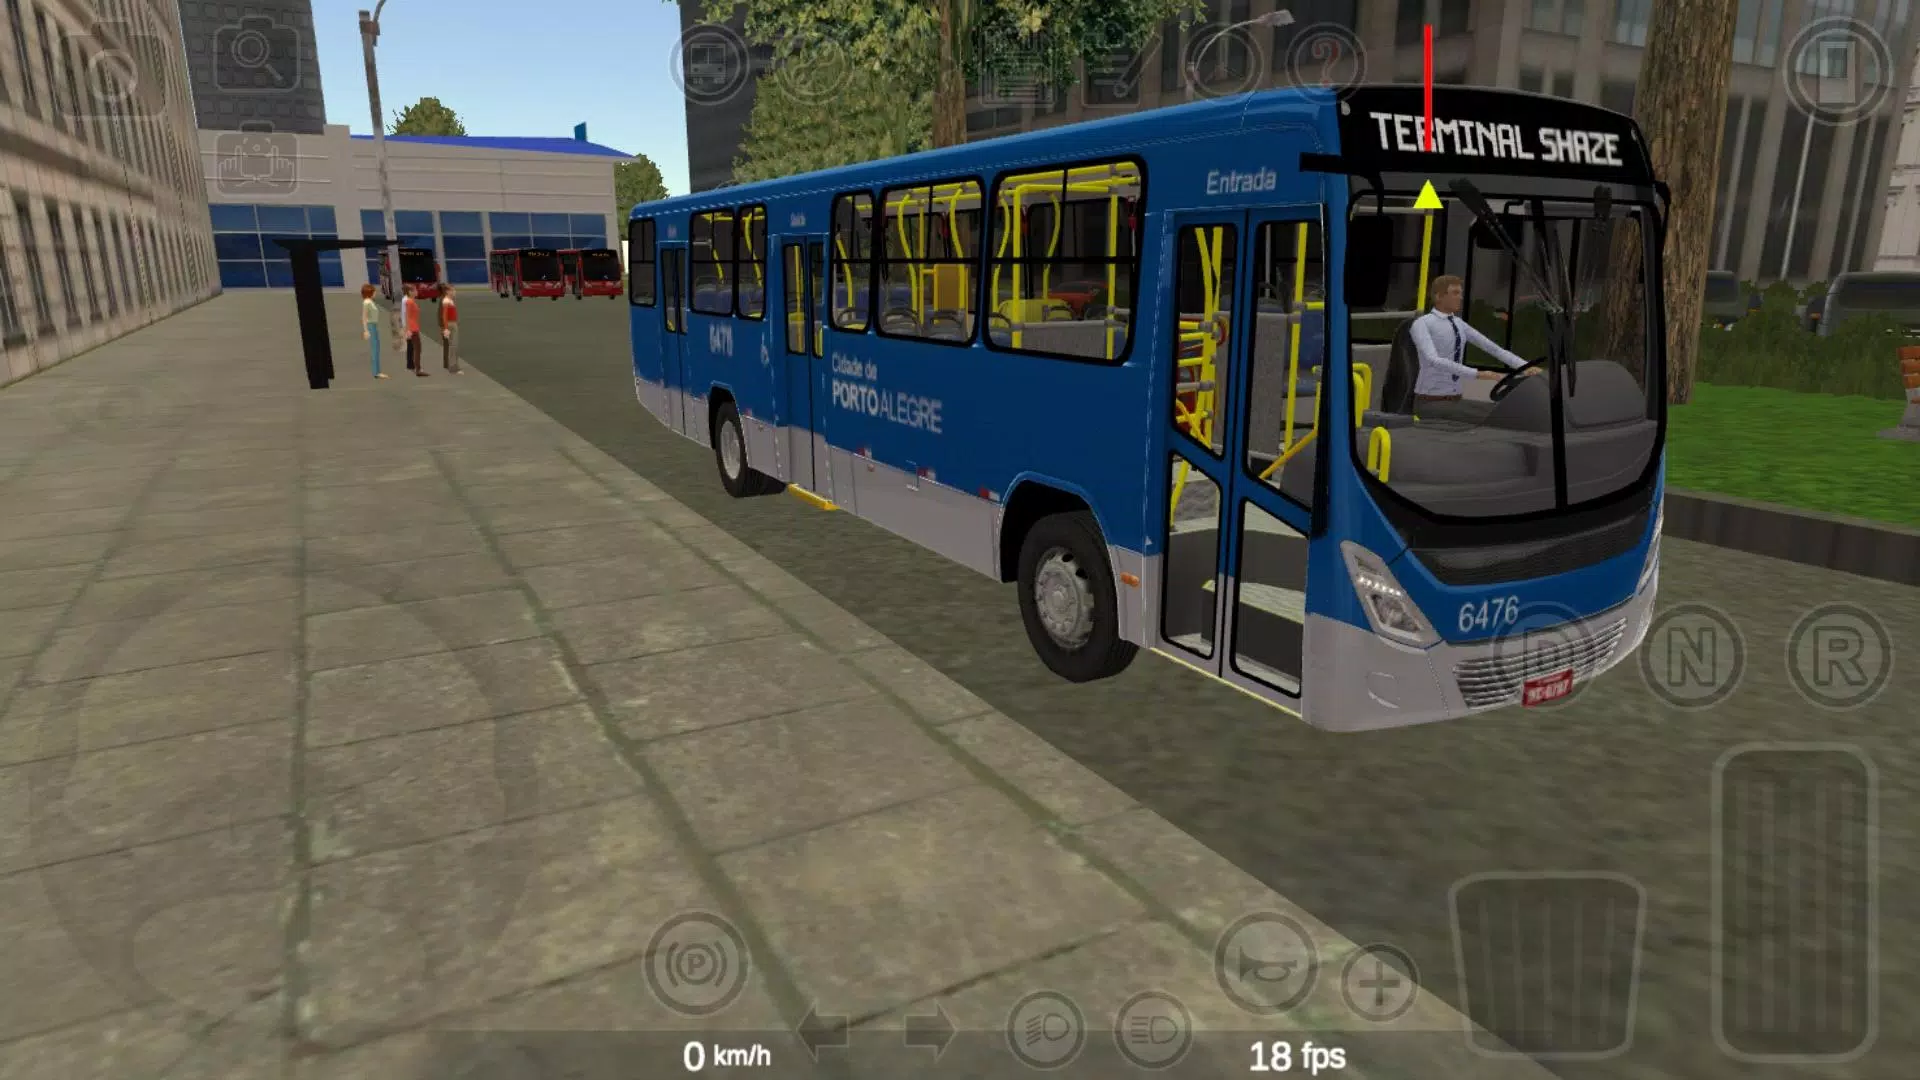 SAIU! Jogo de Ônibus Urbano com diversos veículos para Android - Explozão  Gamer